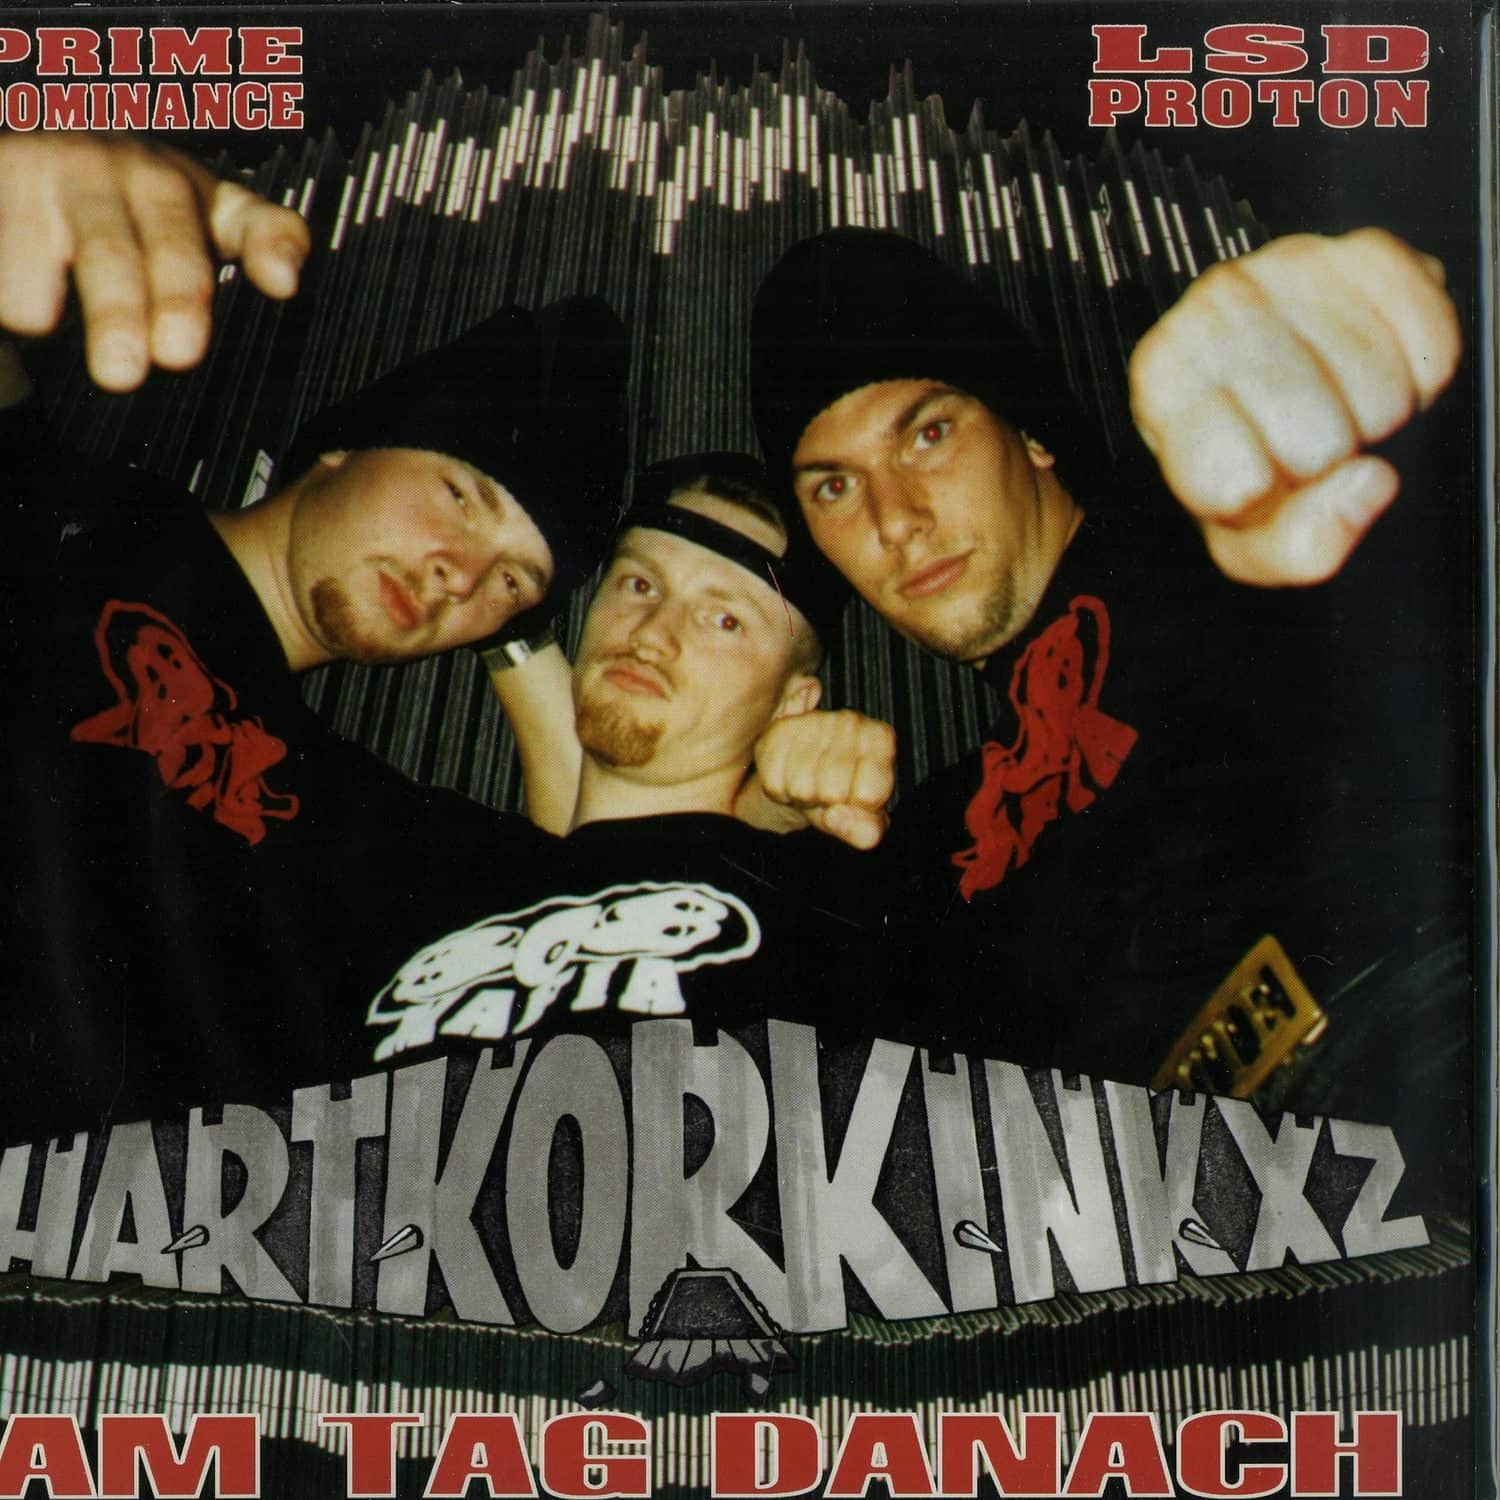 Hartkorkinkxz / 808 Mafia - AM TAG DANACH